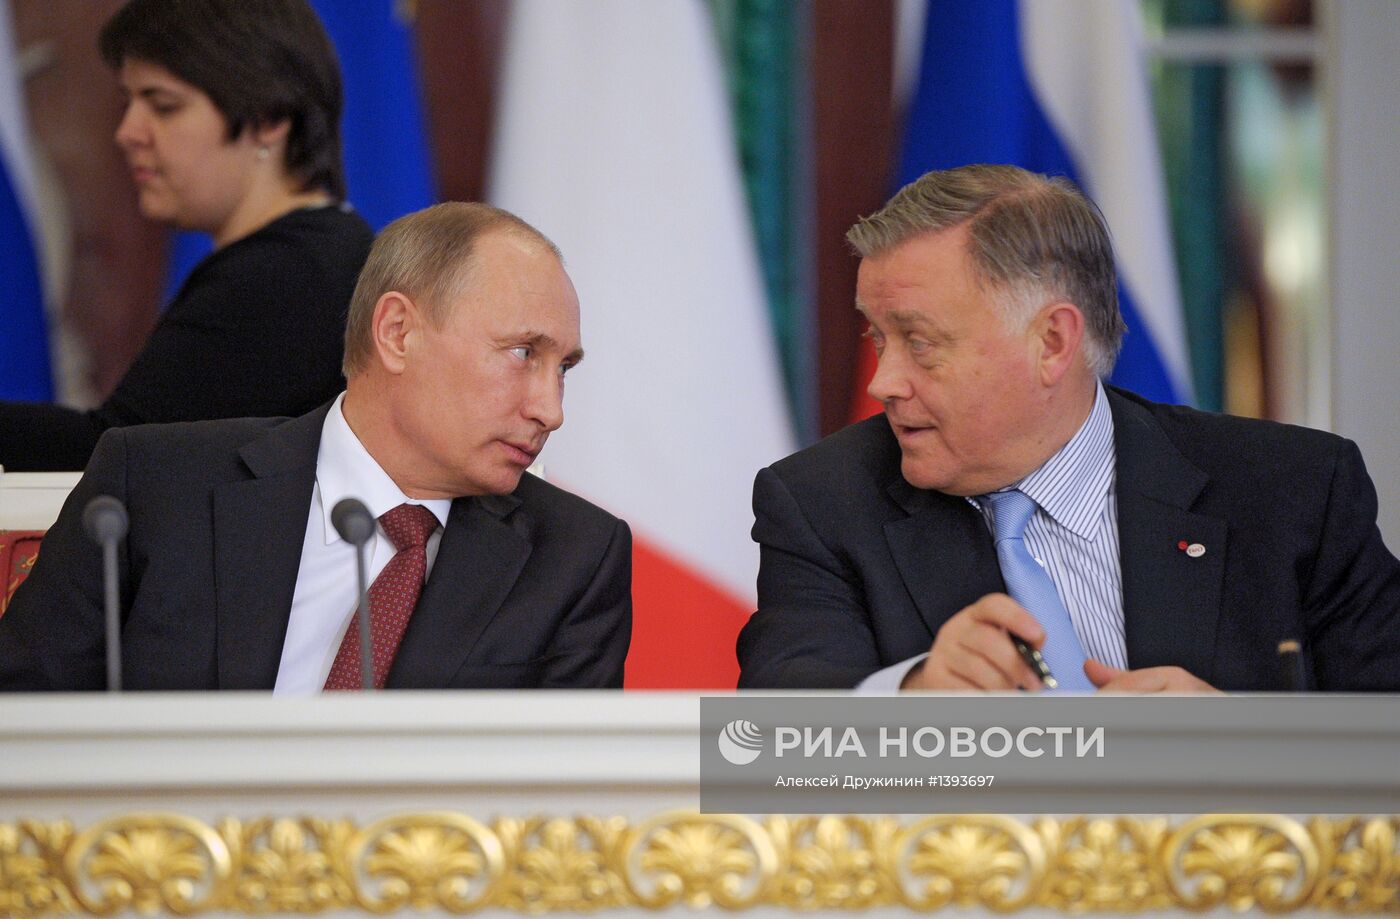 Встреча В.Путина и Ф.Олланда в Кремле